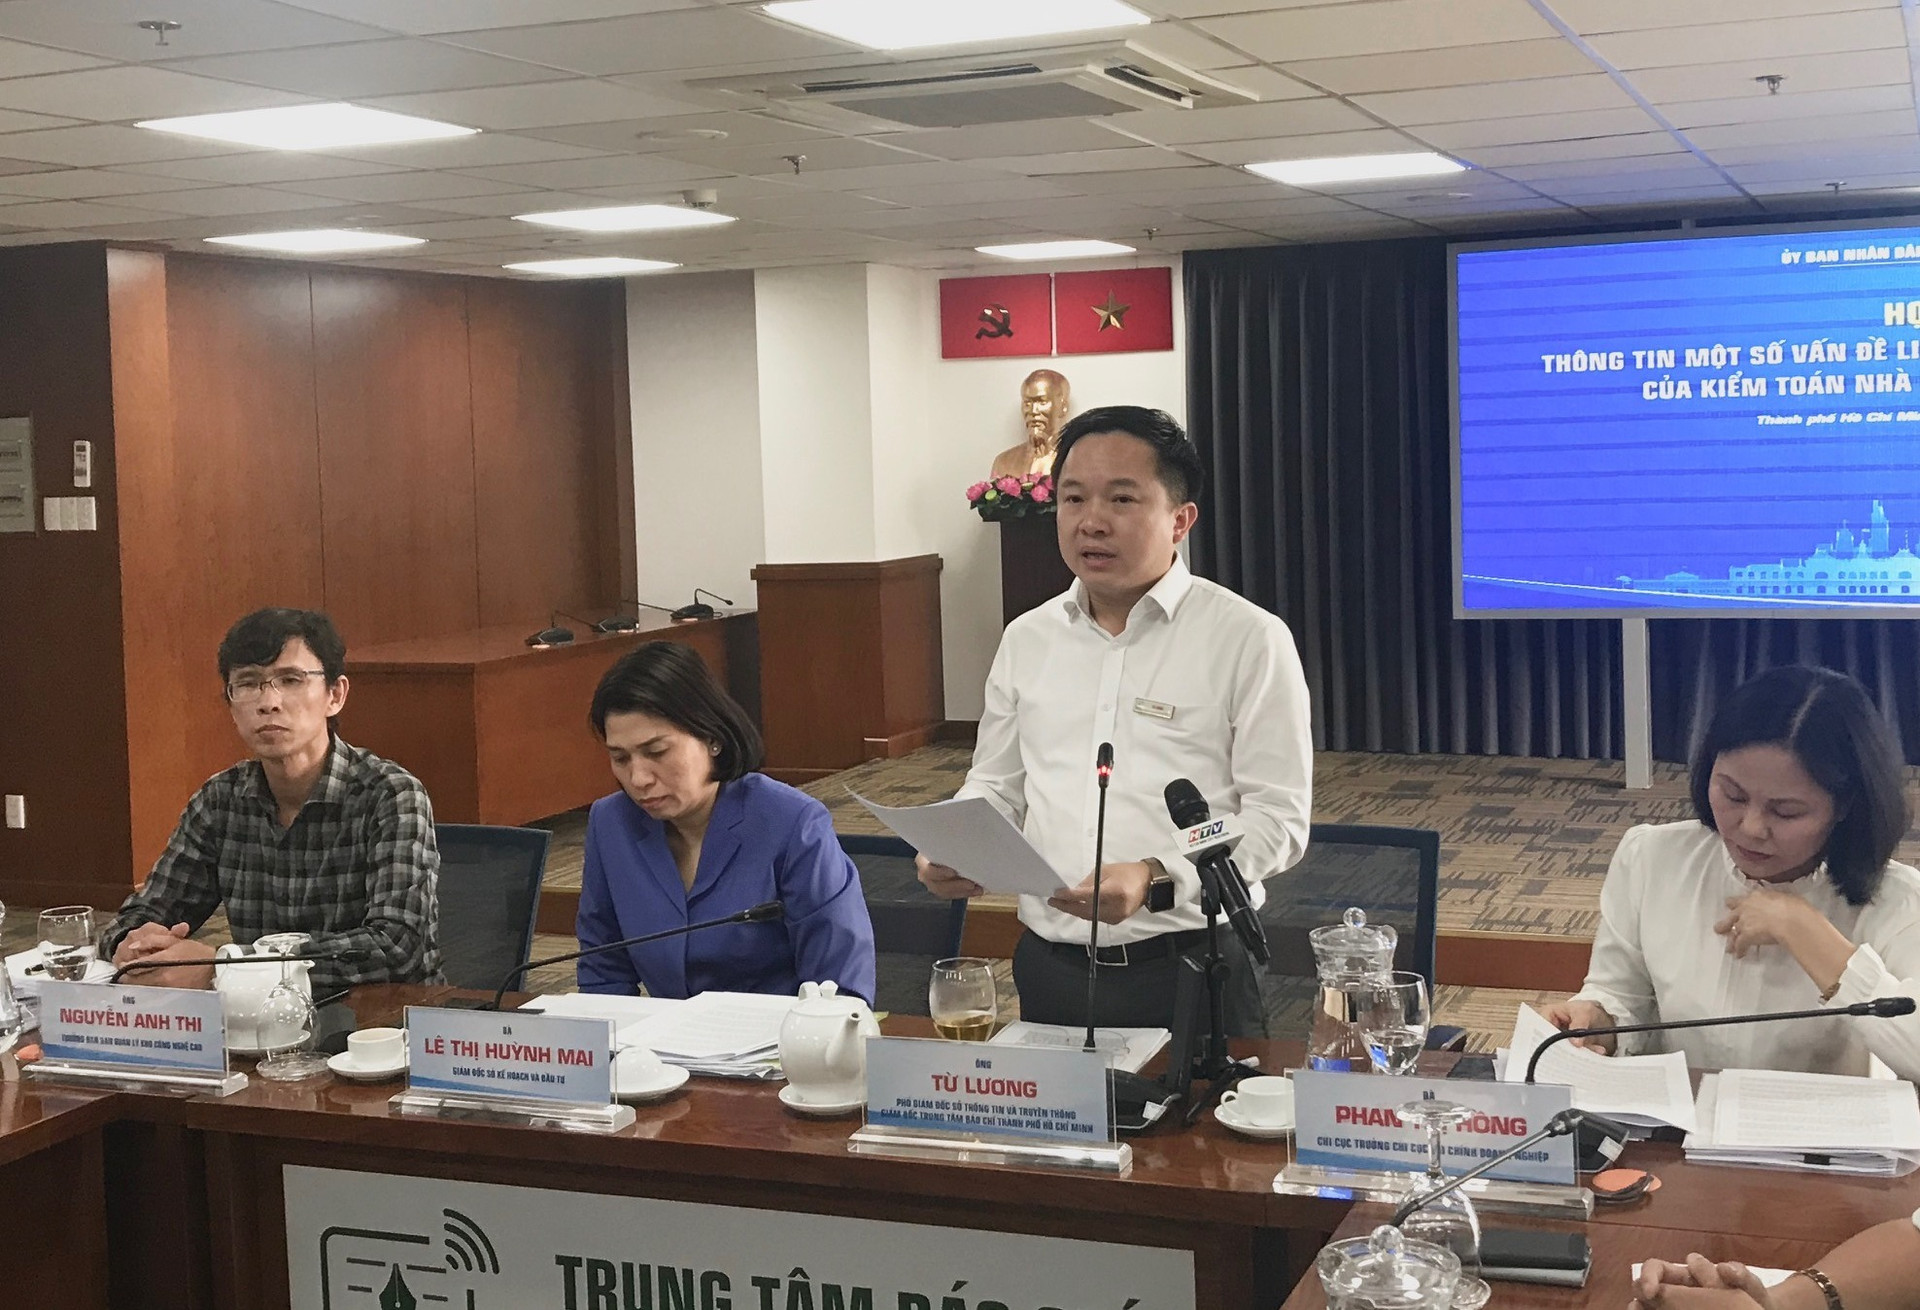 Ông Từ Lương, Phó Giám đốc Sở TT-TT TP HCM thông tin một số vấn đề liên quan đến kết luận của KTNN tại TP HCM.